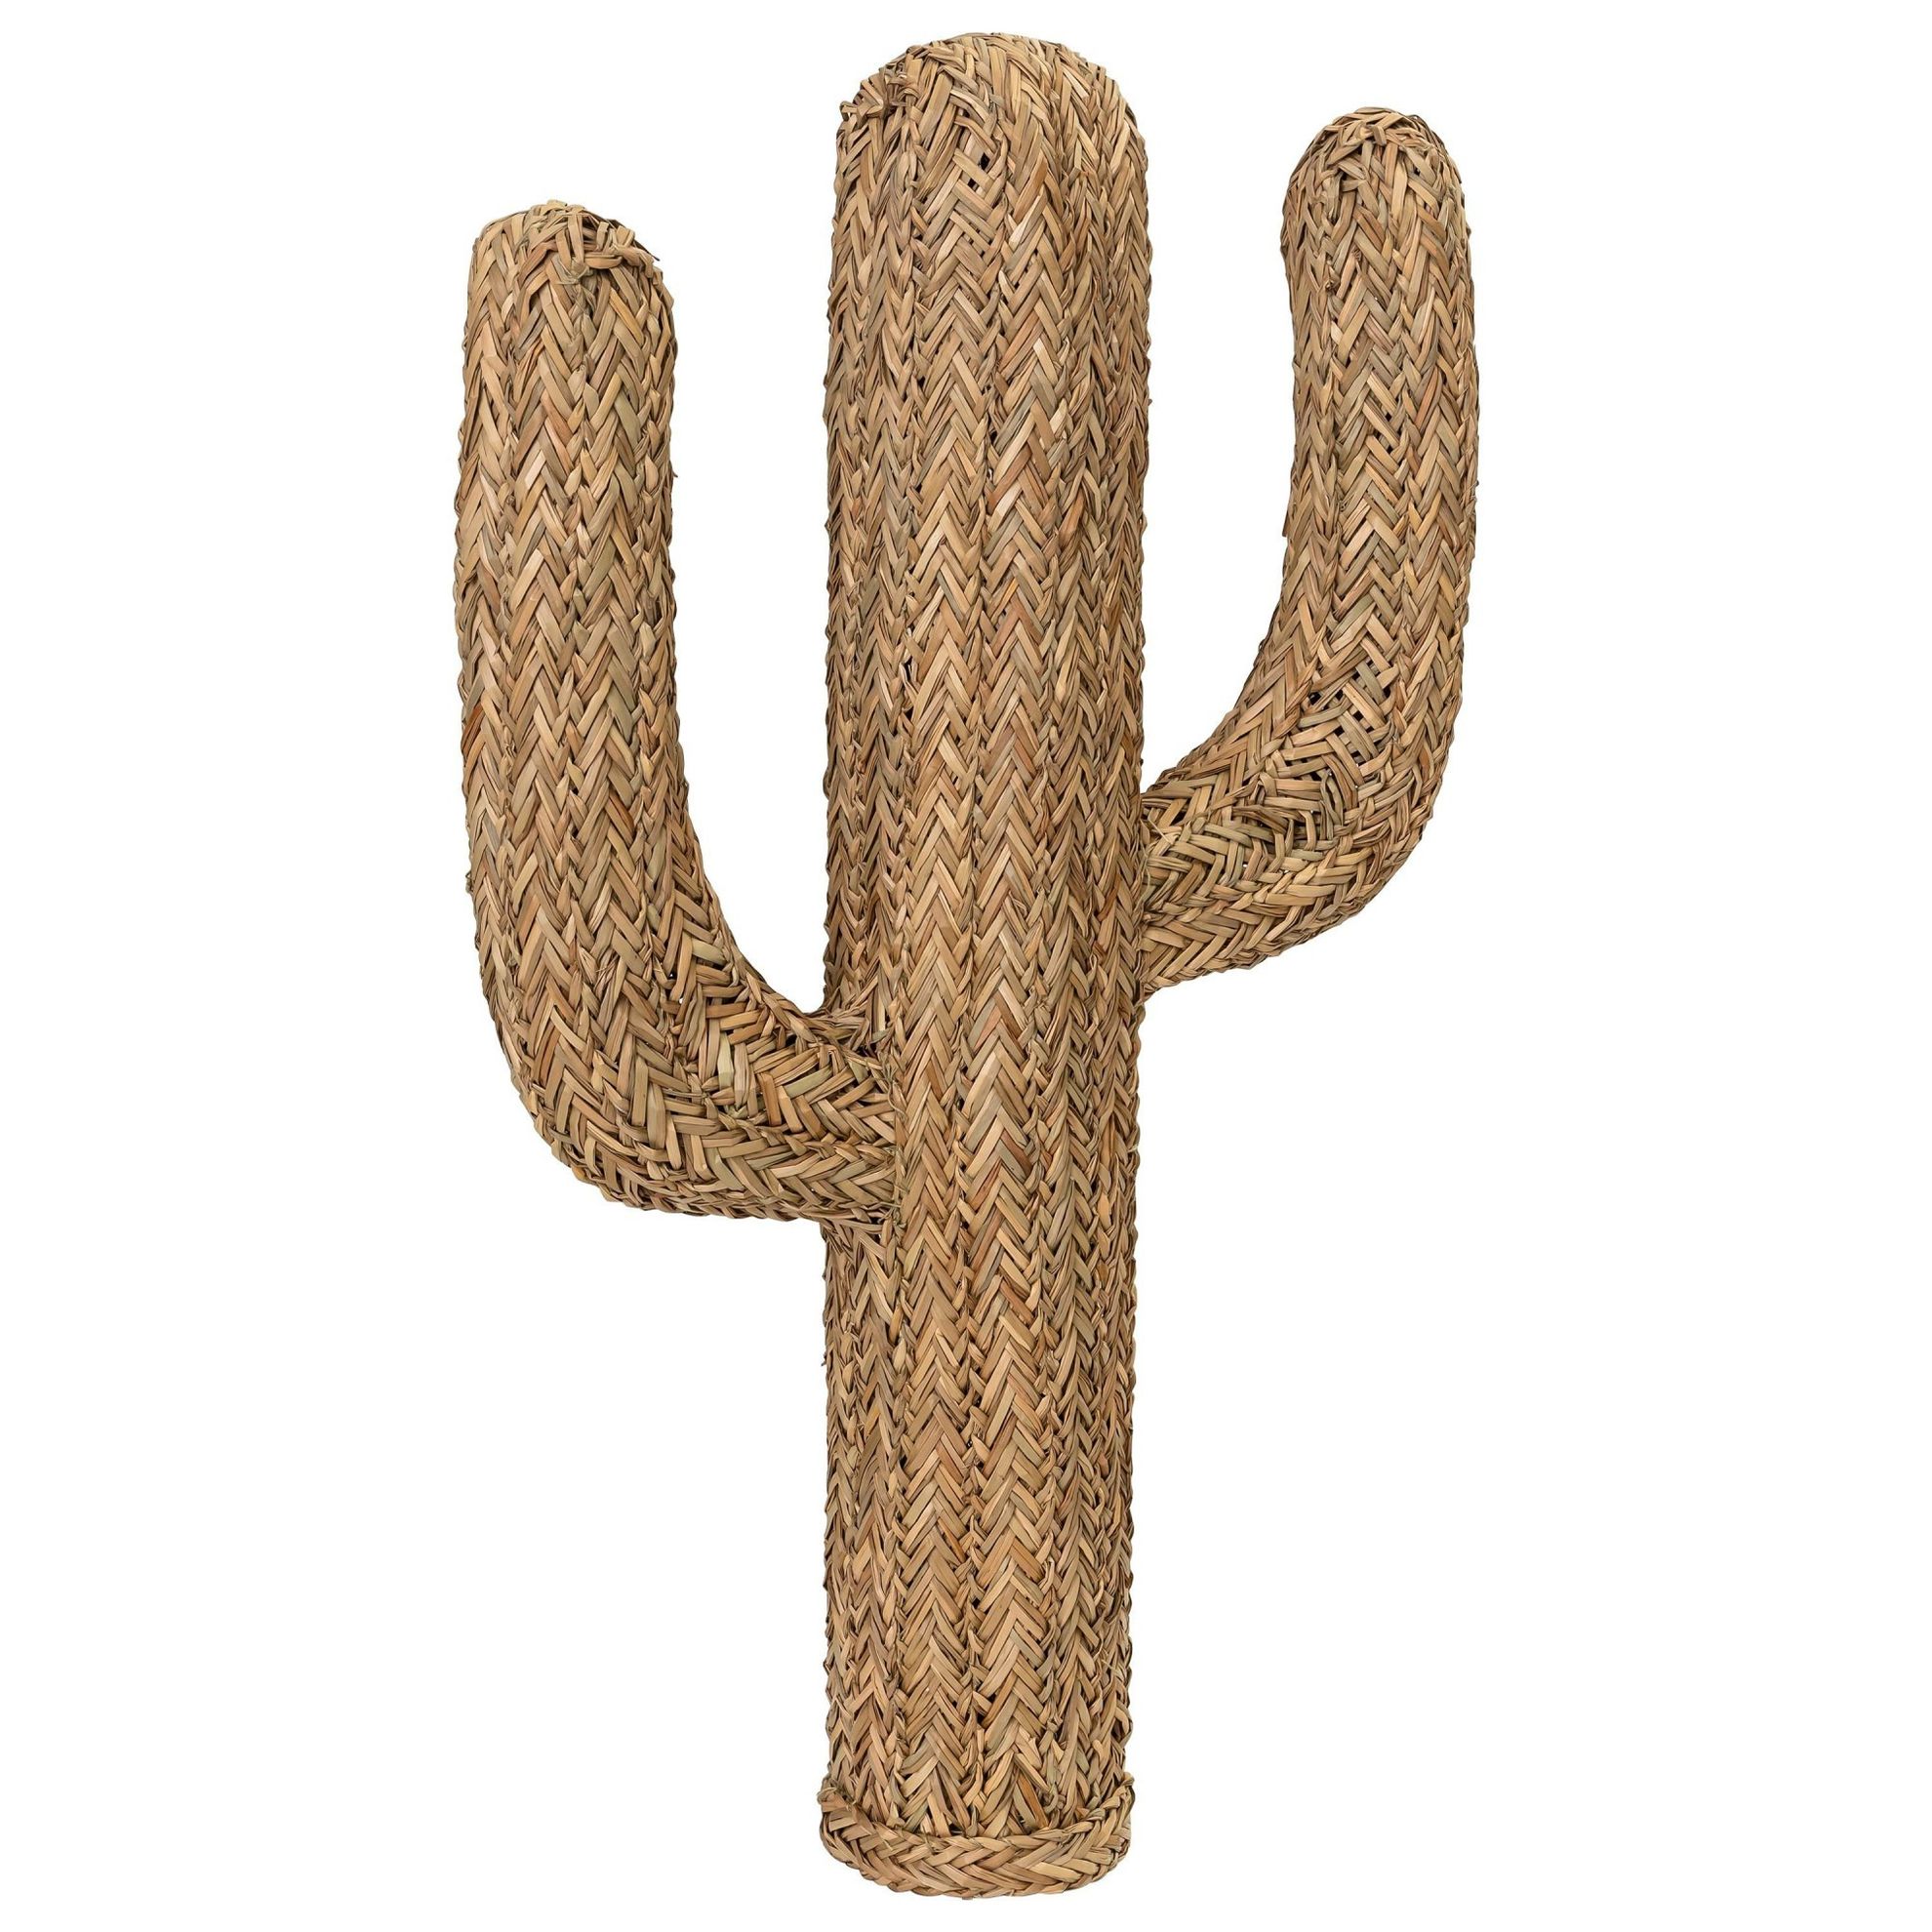 Deko-Objekt Kaktus Cody klein jetzt bei  bestellen